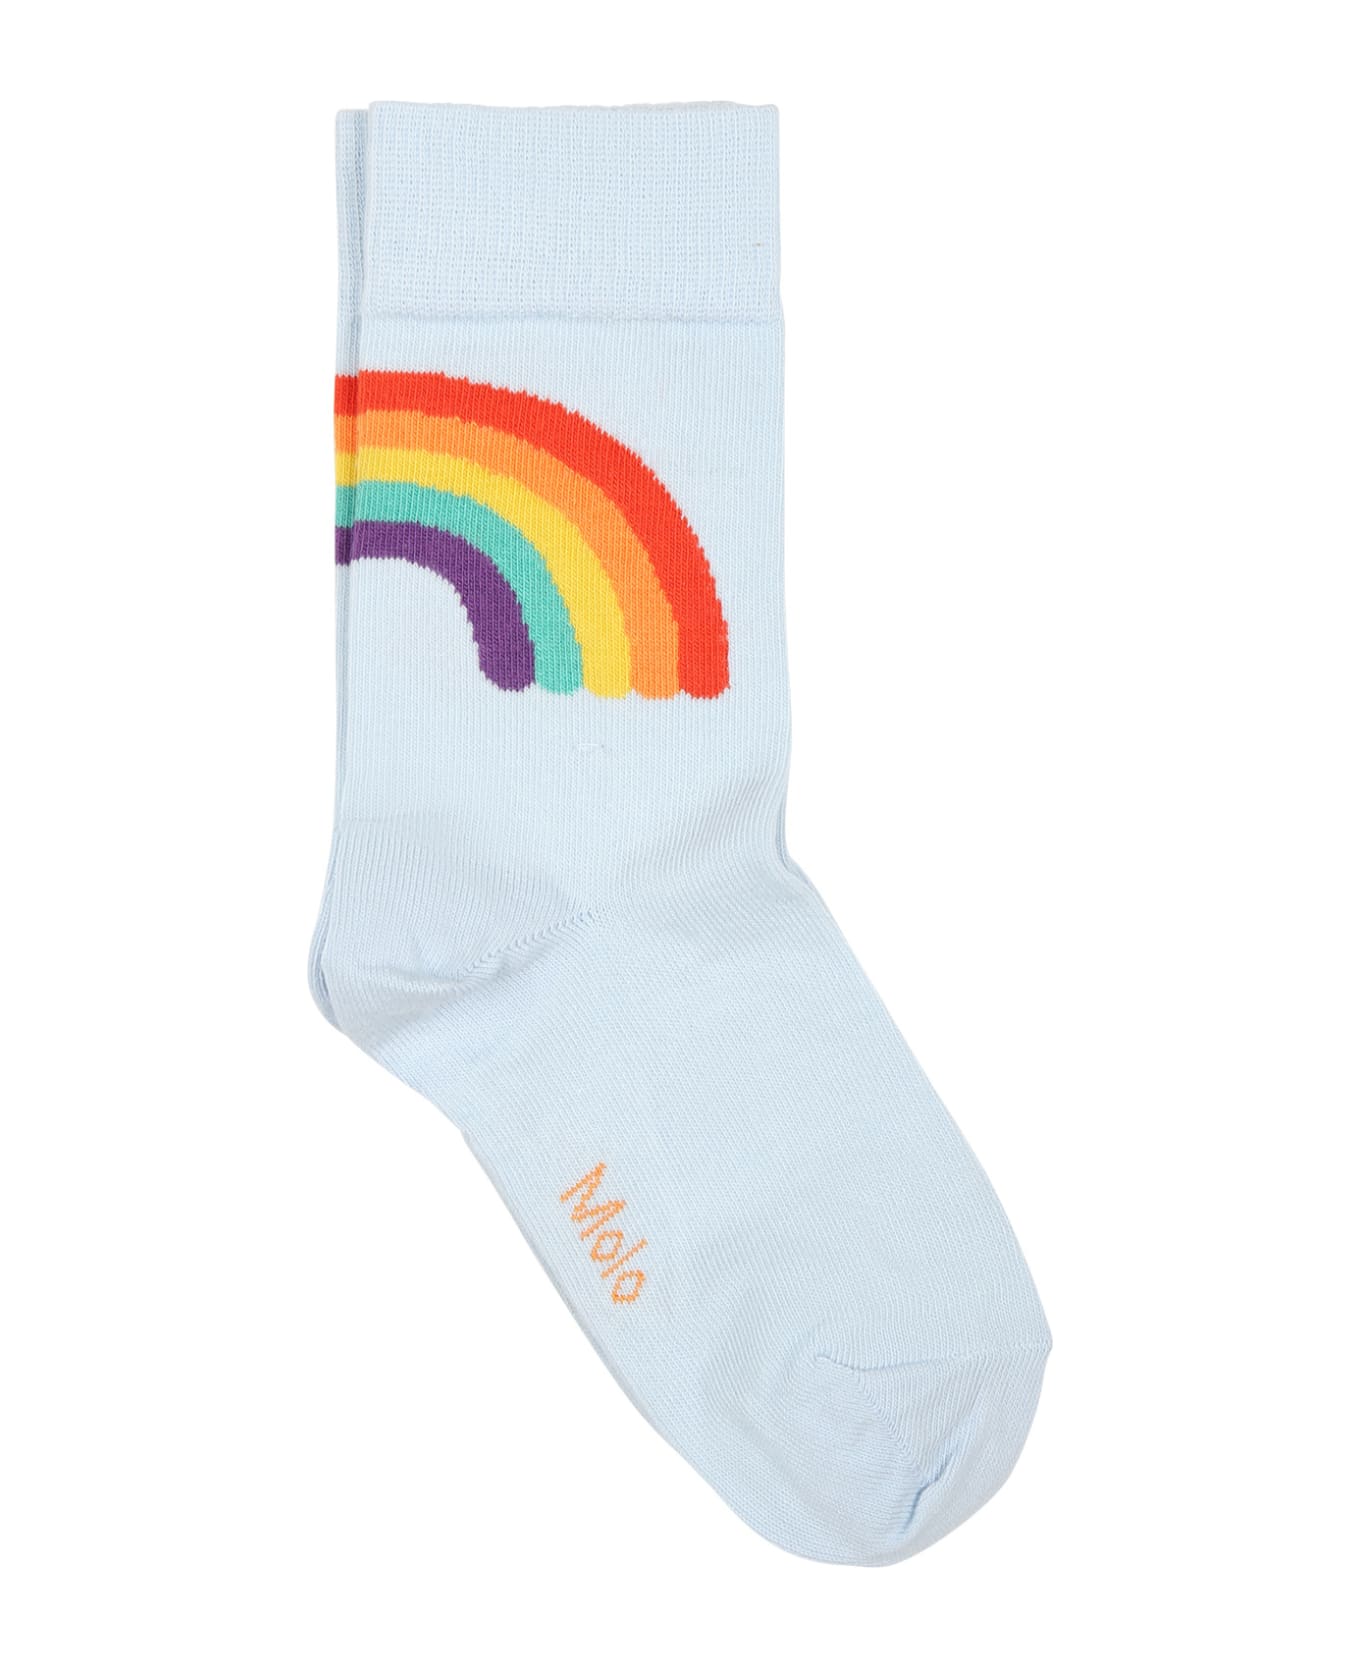 Molo Multicolor Socks Set For Kids - Multicolor